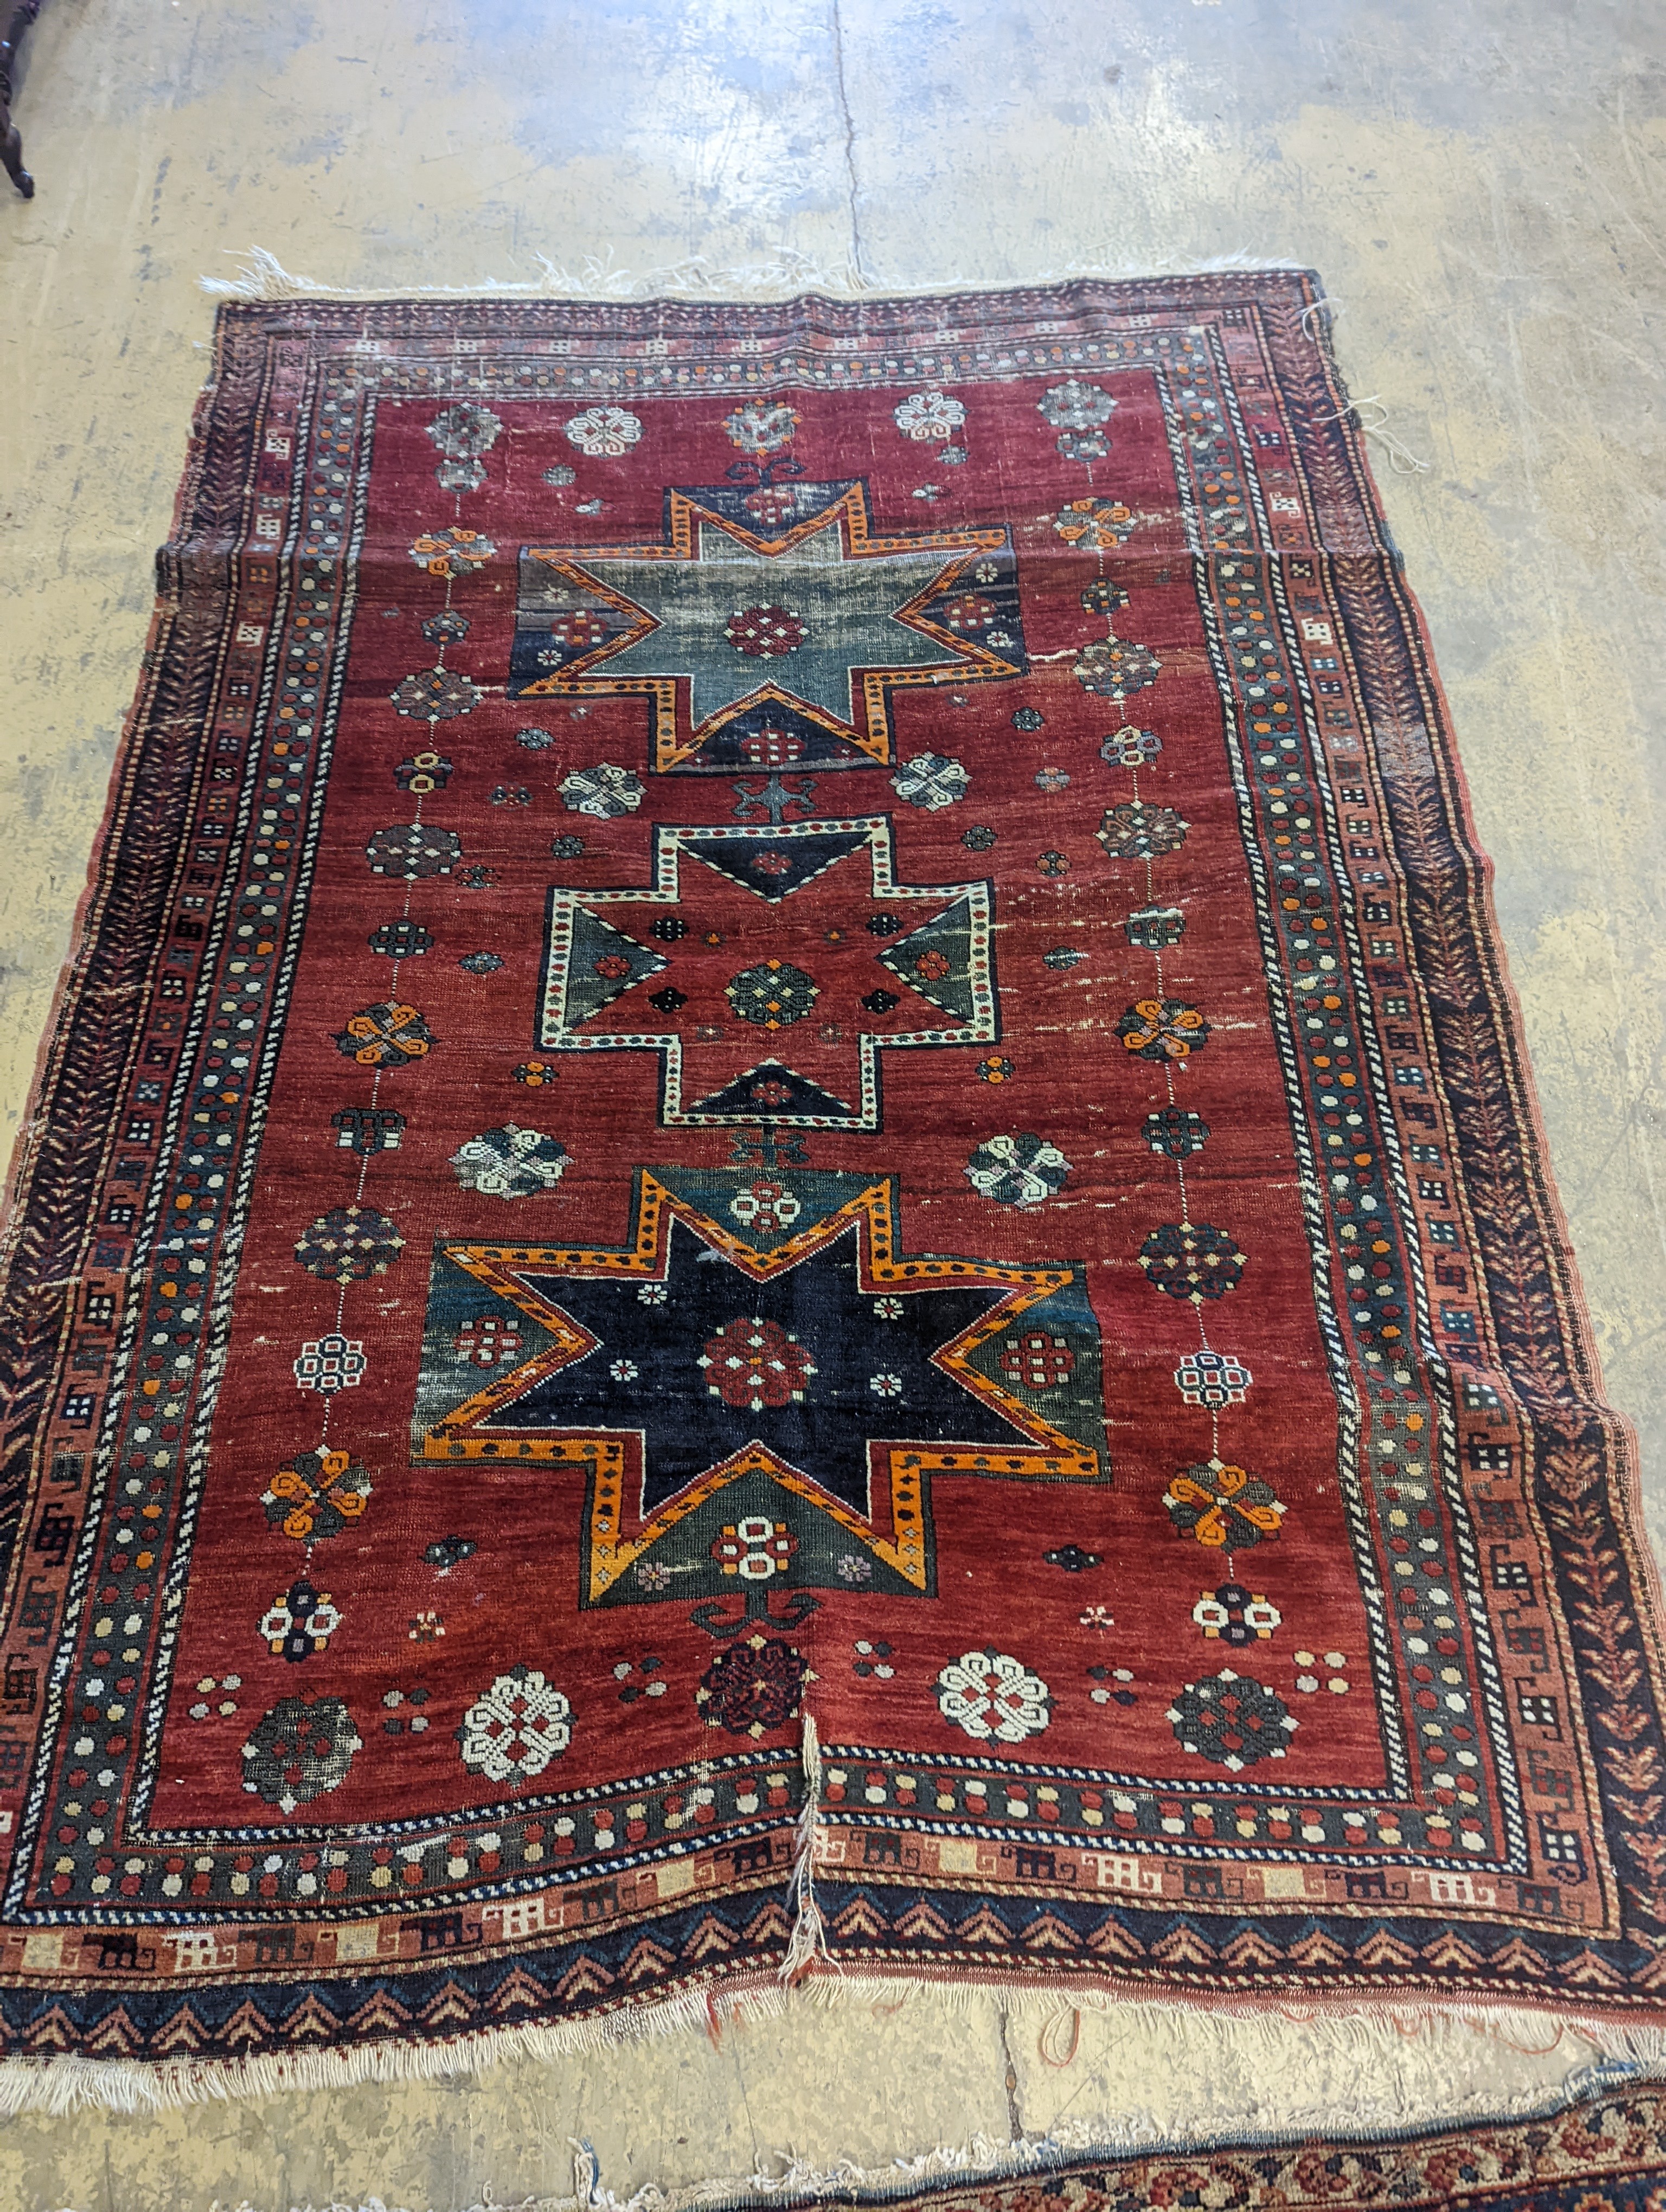 A Kazak red ground rug, 210 x 160cm